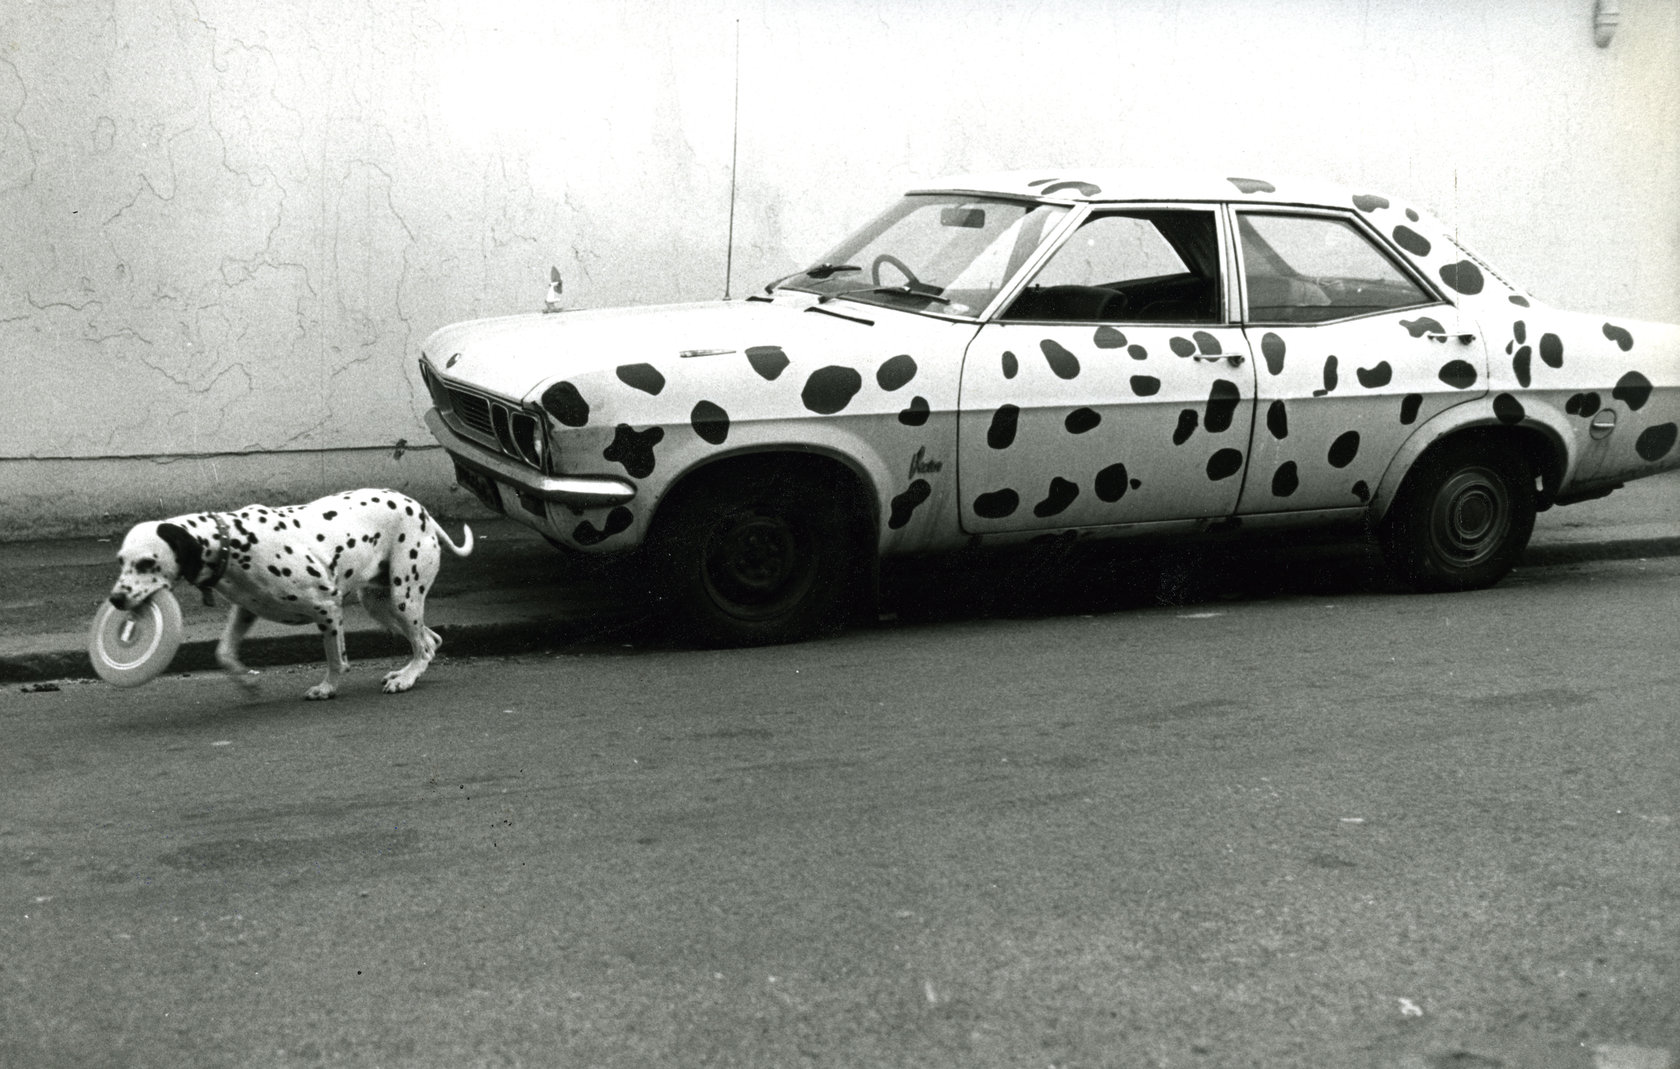 Photo Archiv Schweitzer: Dalmatiner vor gepunktetem Ford